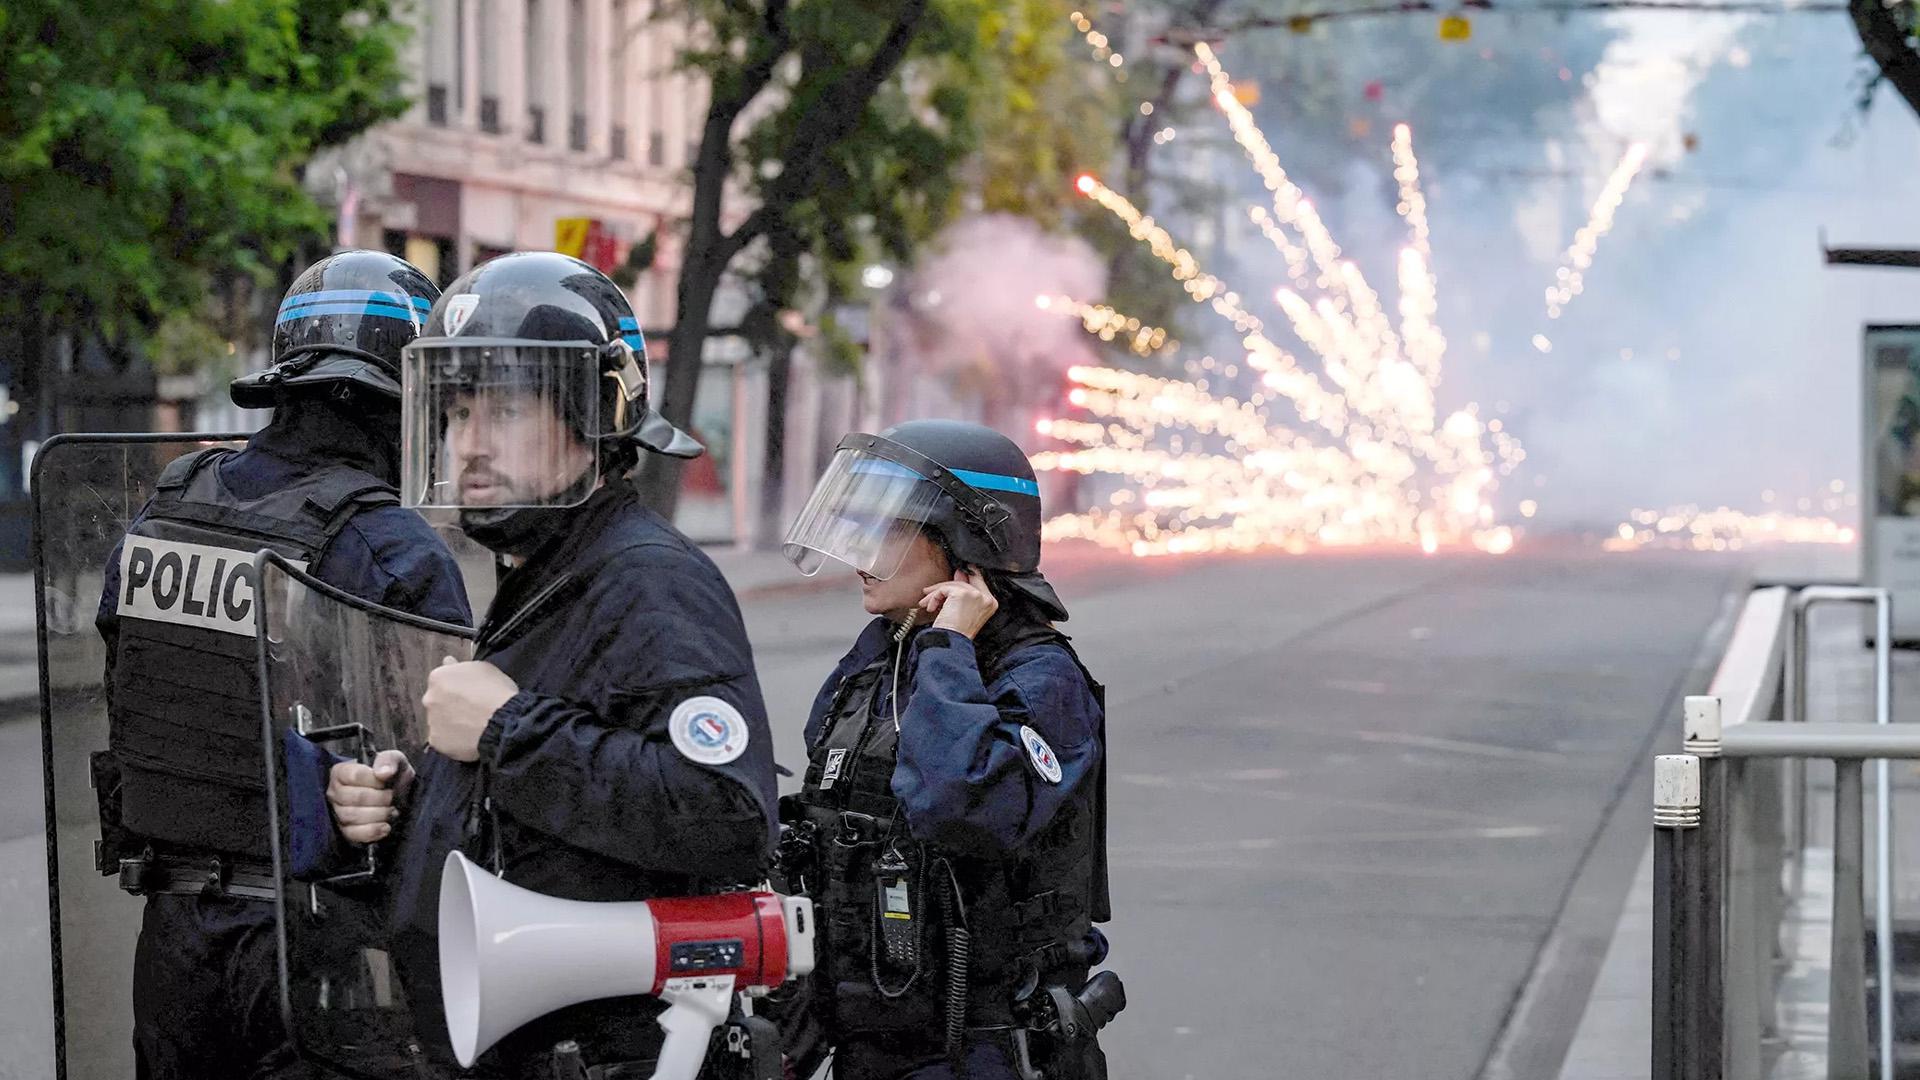 Жители Франции — о причинах беспорядков и обстановке в стране. Видео